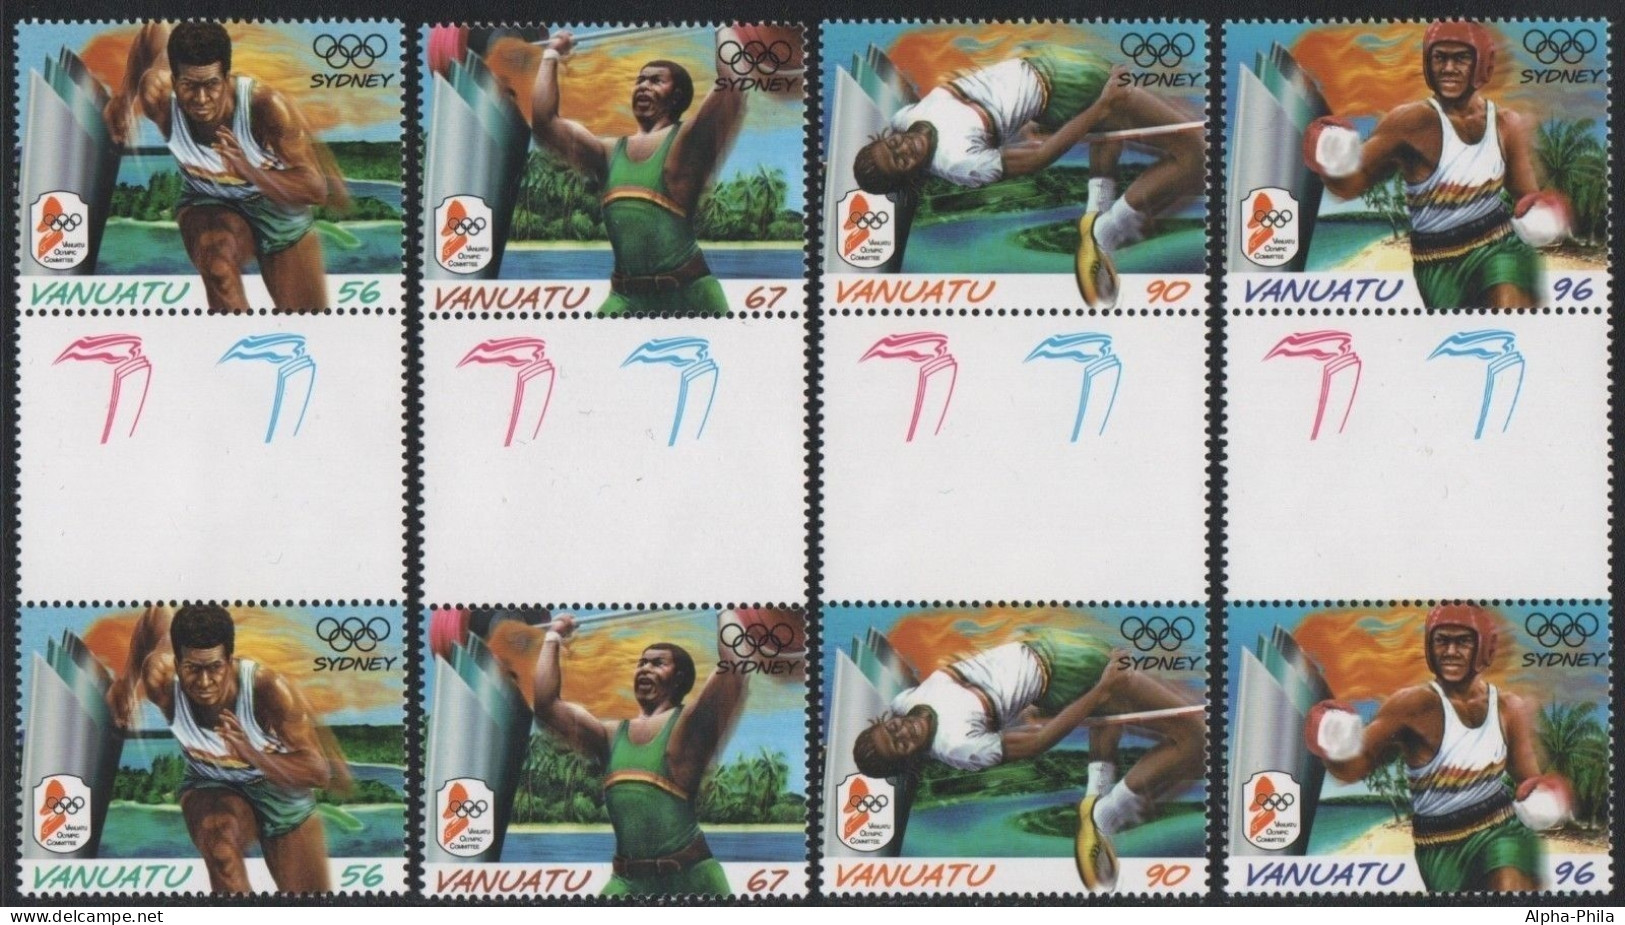 Vanuatu 2000 - Mi-Nr. 1121-1124 ** - MNH - Stegpaare - Olympia Sydney - Vanuatu (1980-...)